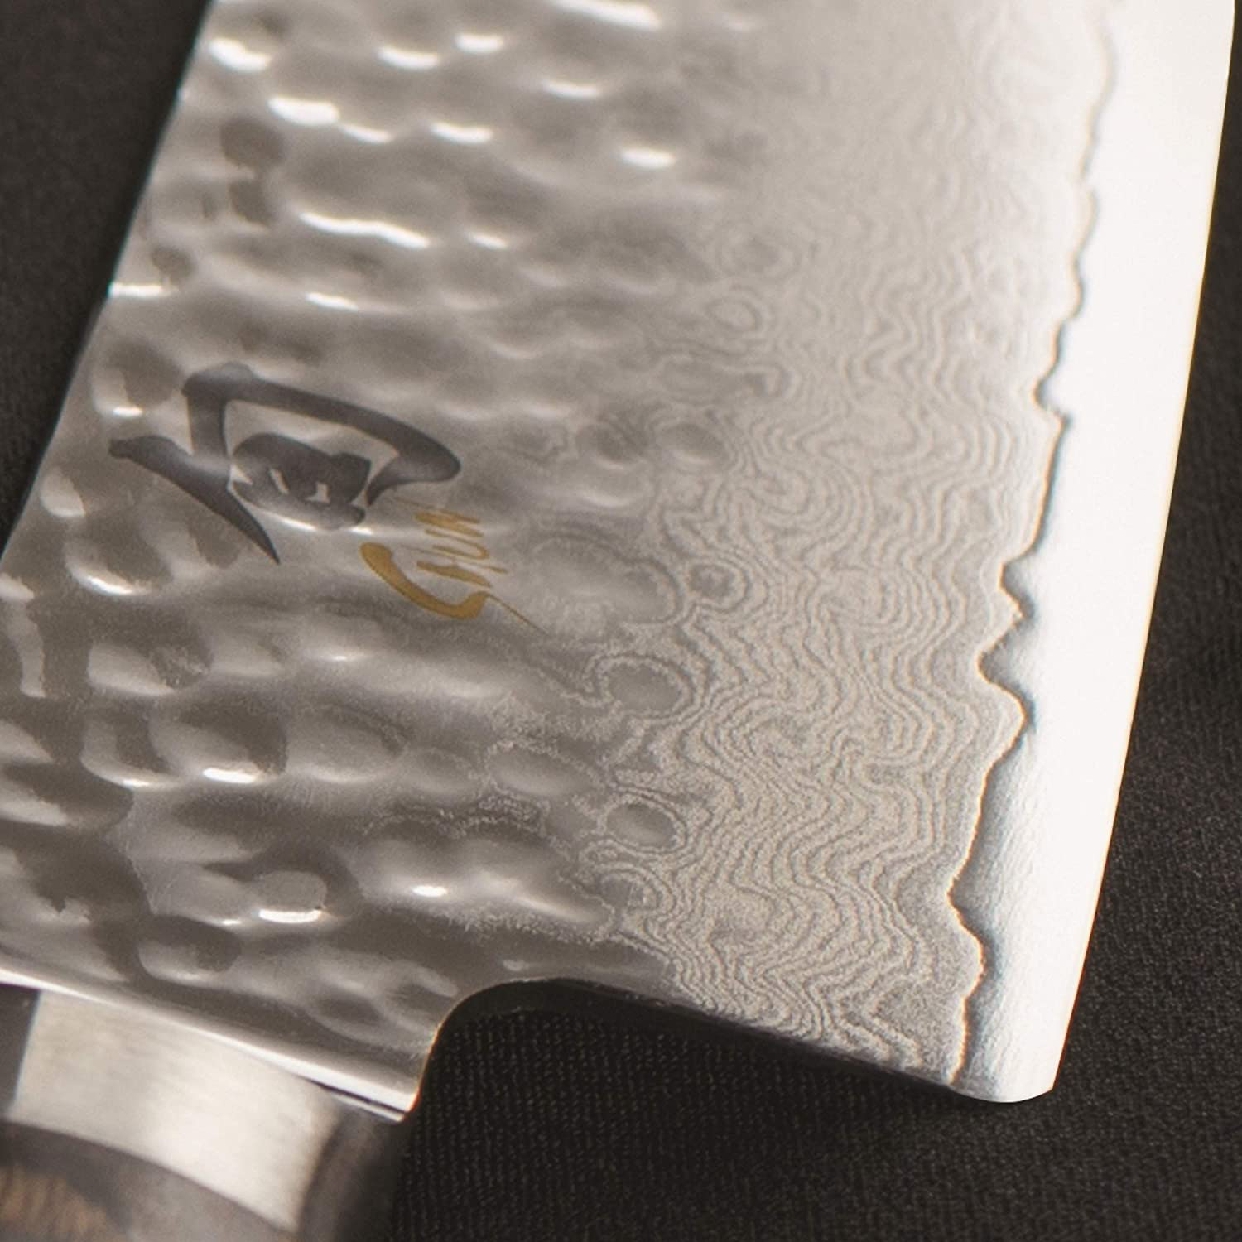 旬(Shun) Bread Knife TDM0705 シルバーの商品画像11 